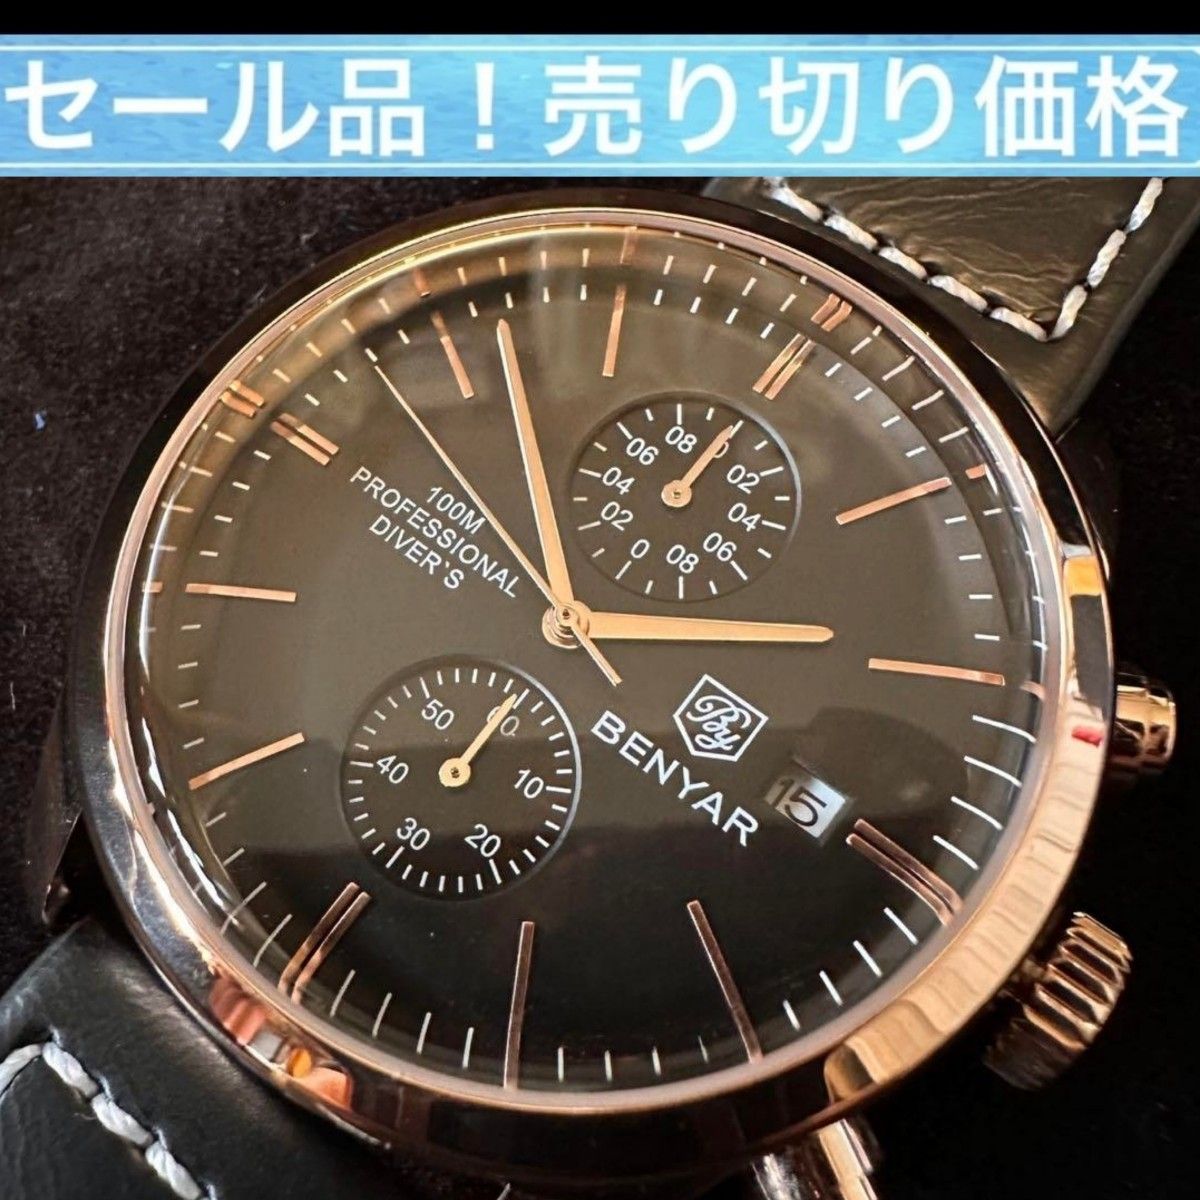 PAGANI DESIGN ハウスブランド 【BENYAR】 本皮 クォーツ 腕時計 クロノグラフ ウォッチ パガーニデザイン